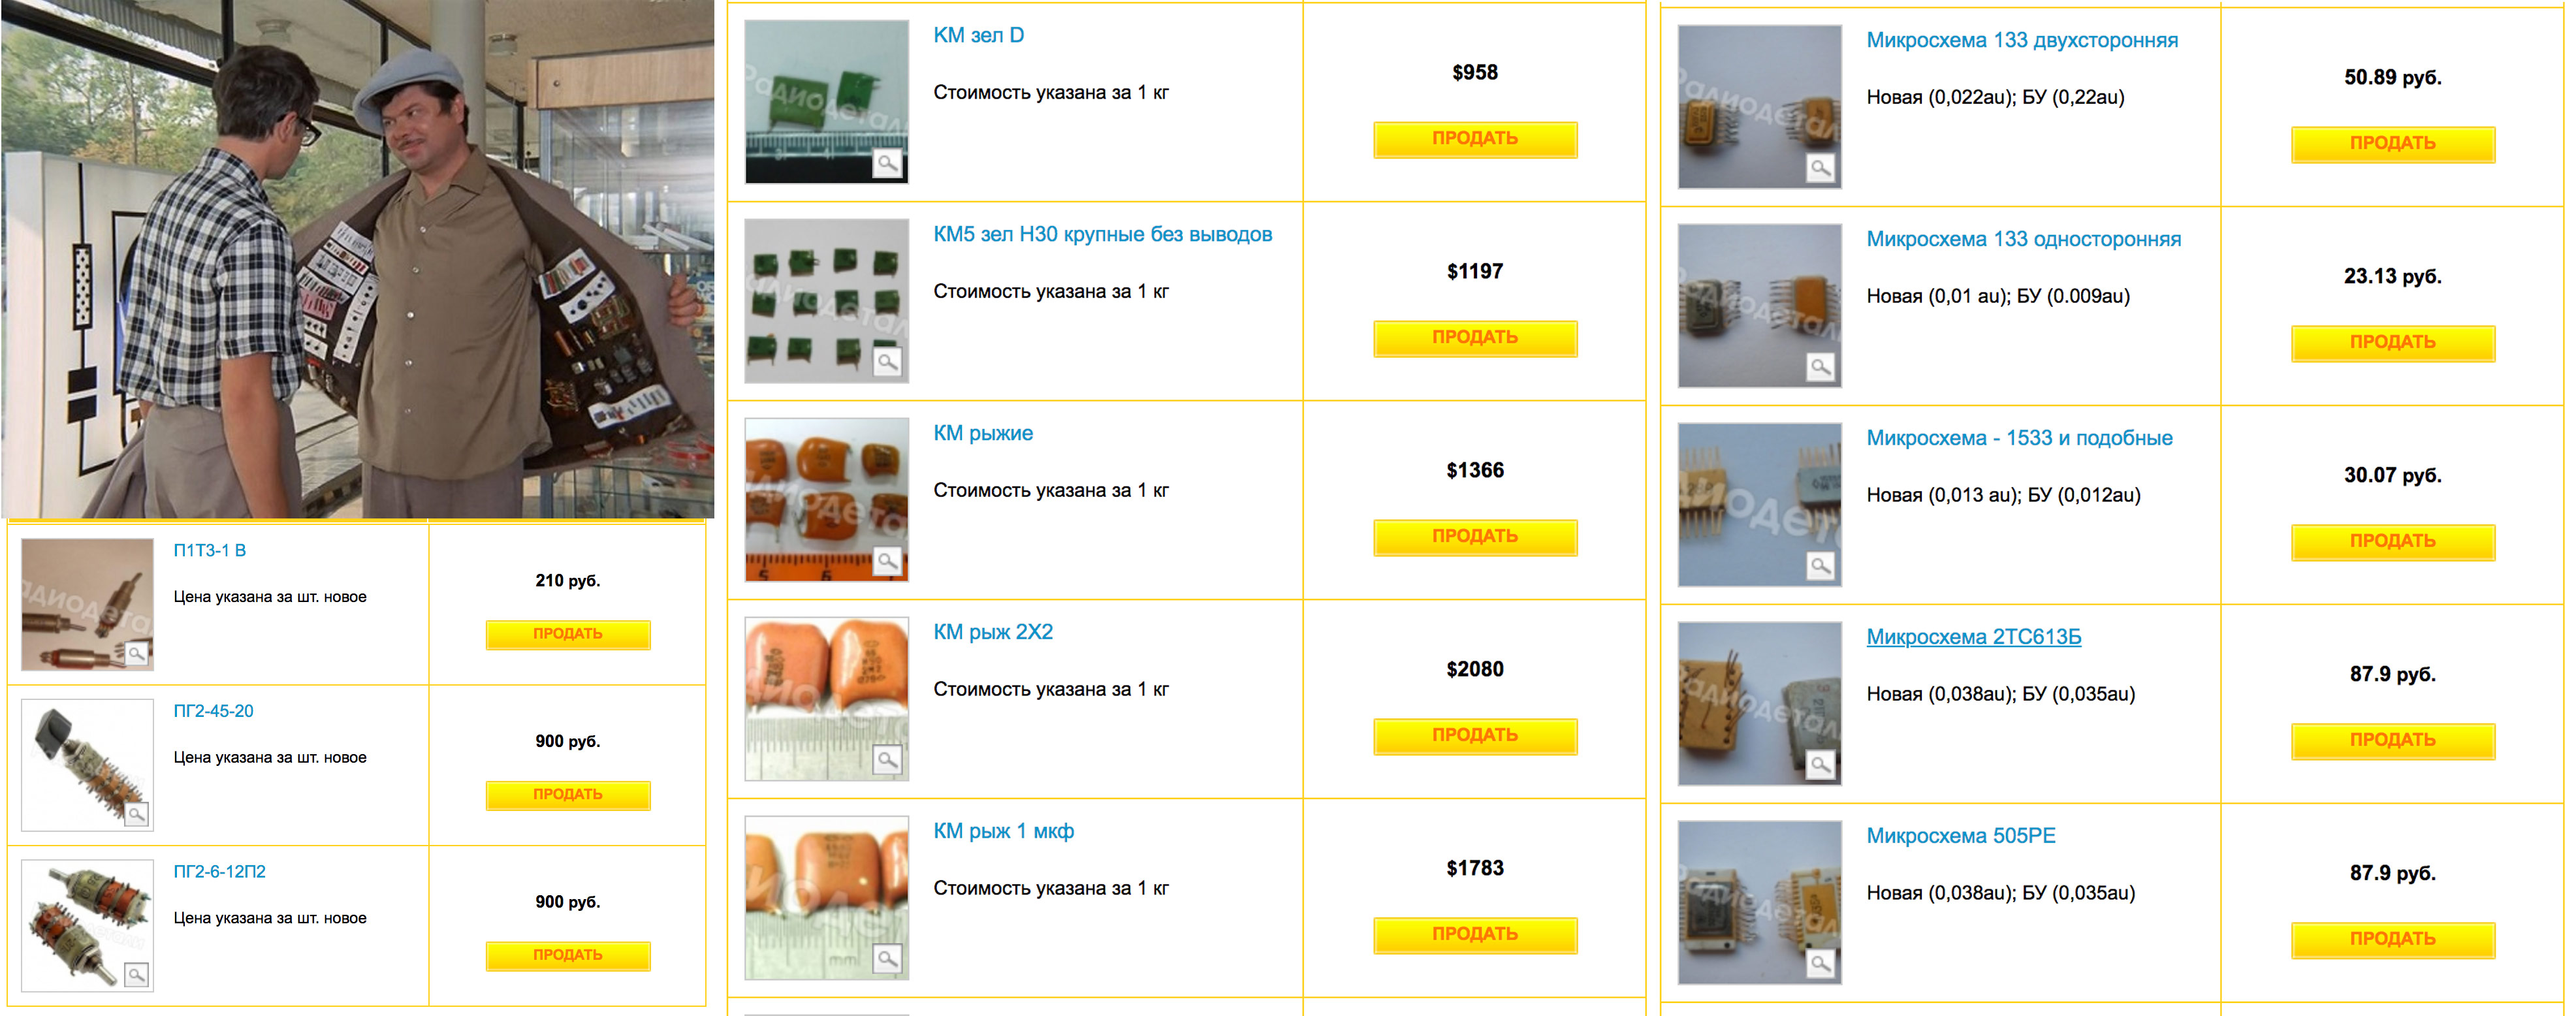 Скриншоты с сайта фирмы, скупающей радиодетали для извлечения драгметаллов